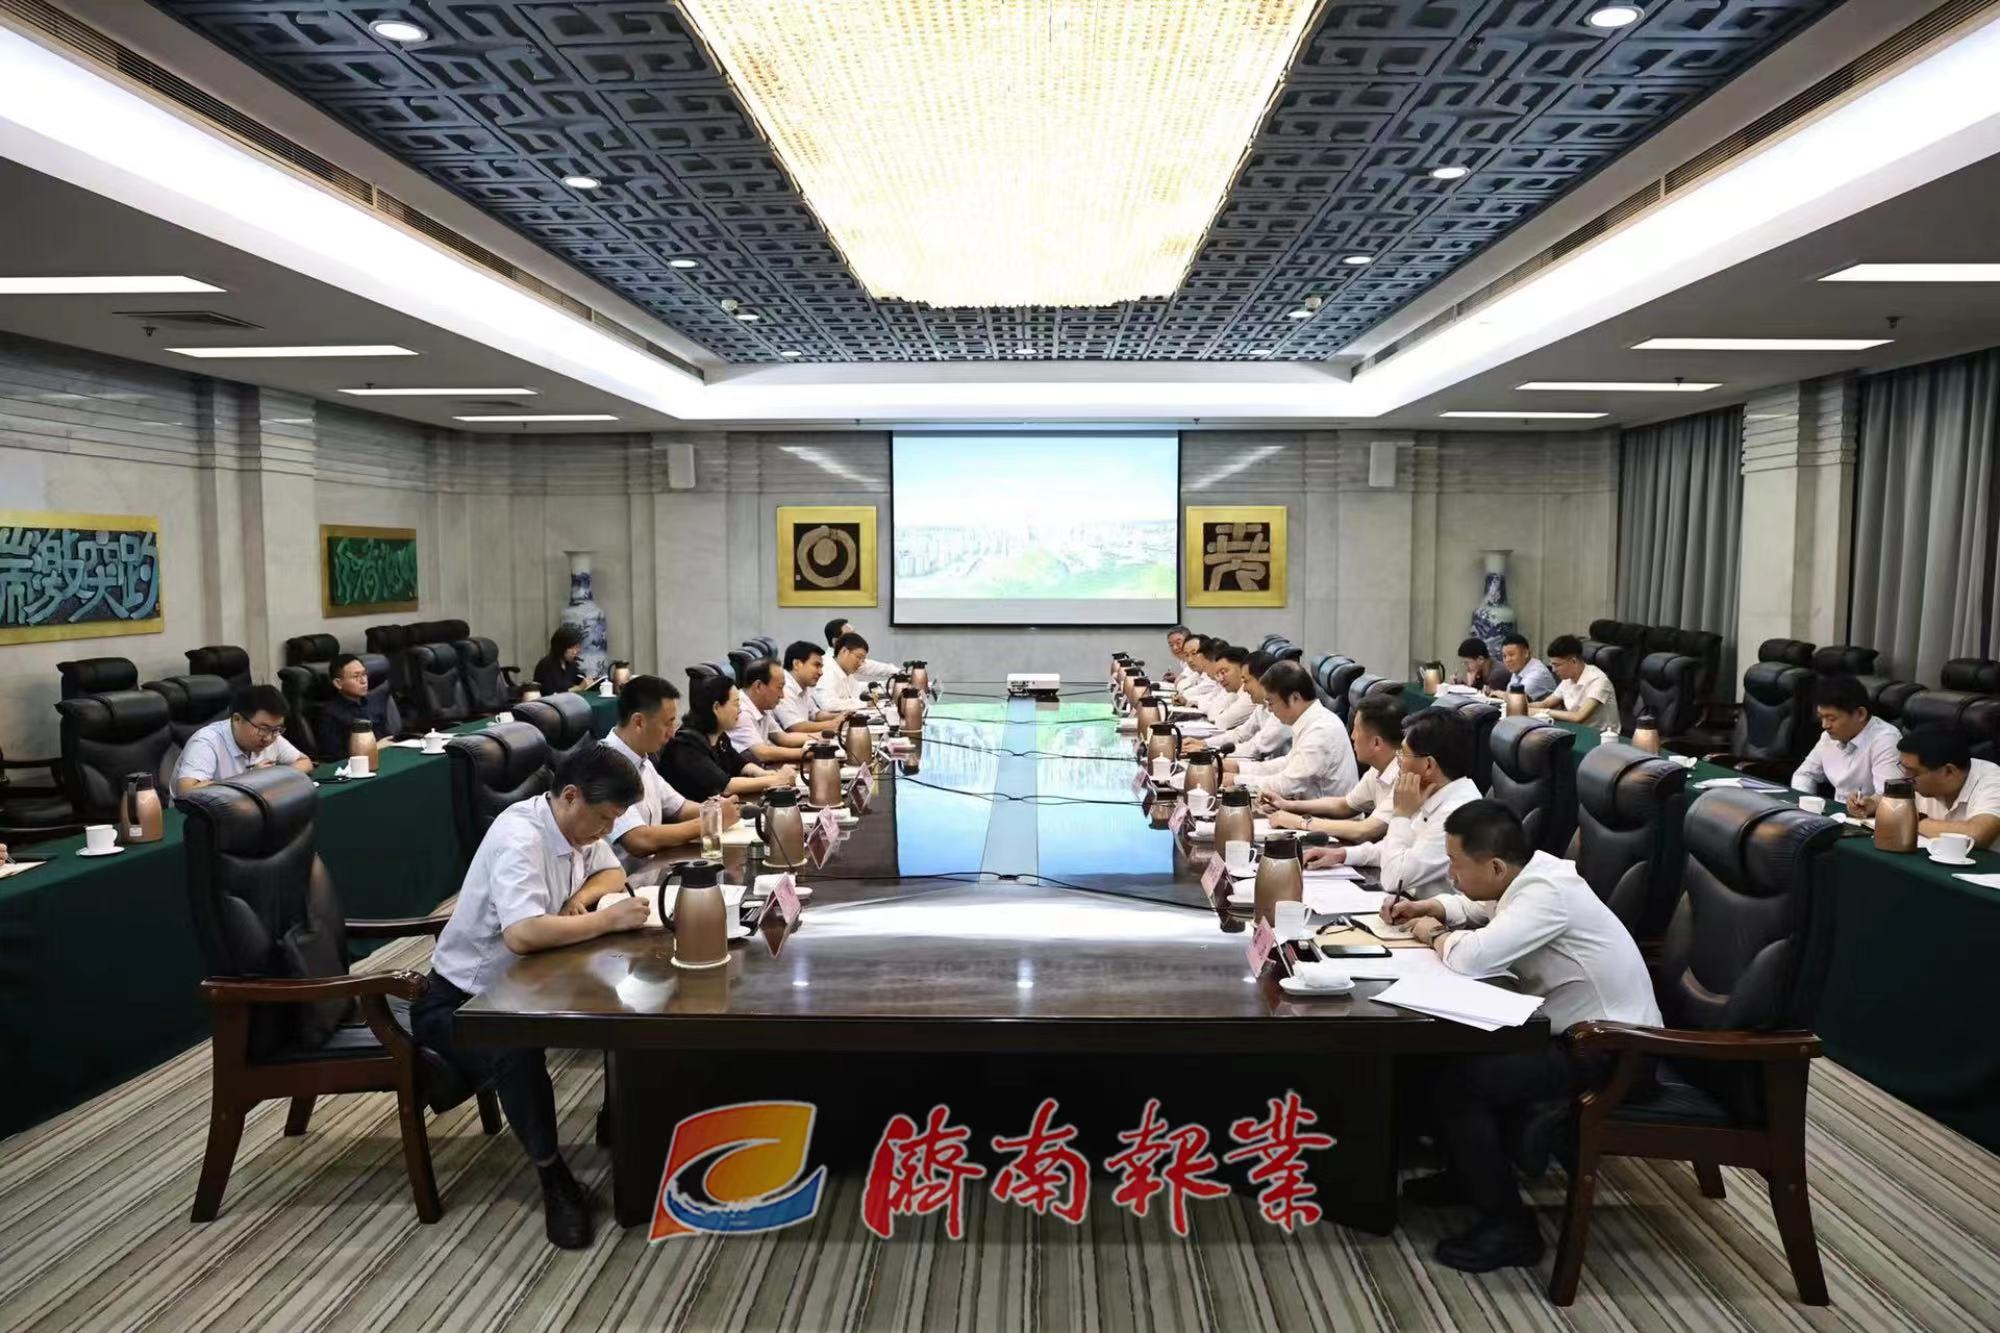 驻鲁中央媒体机构及省级主要媒体座谈会召开 刘强讲话 杨峰出席